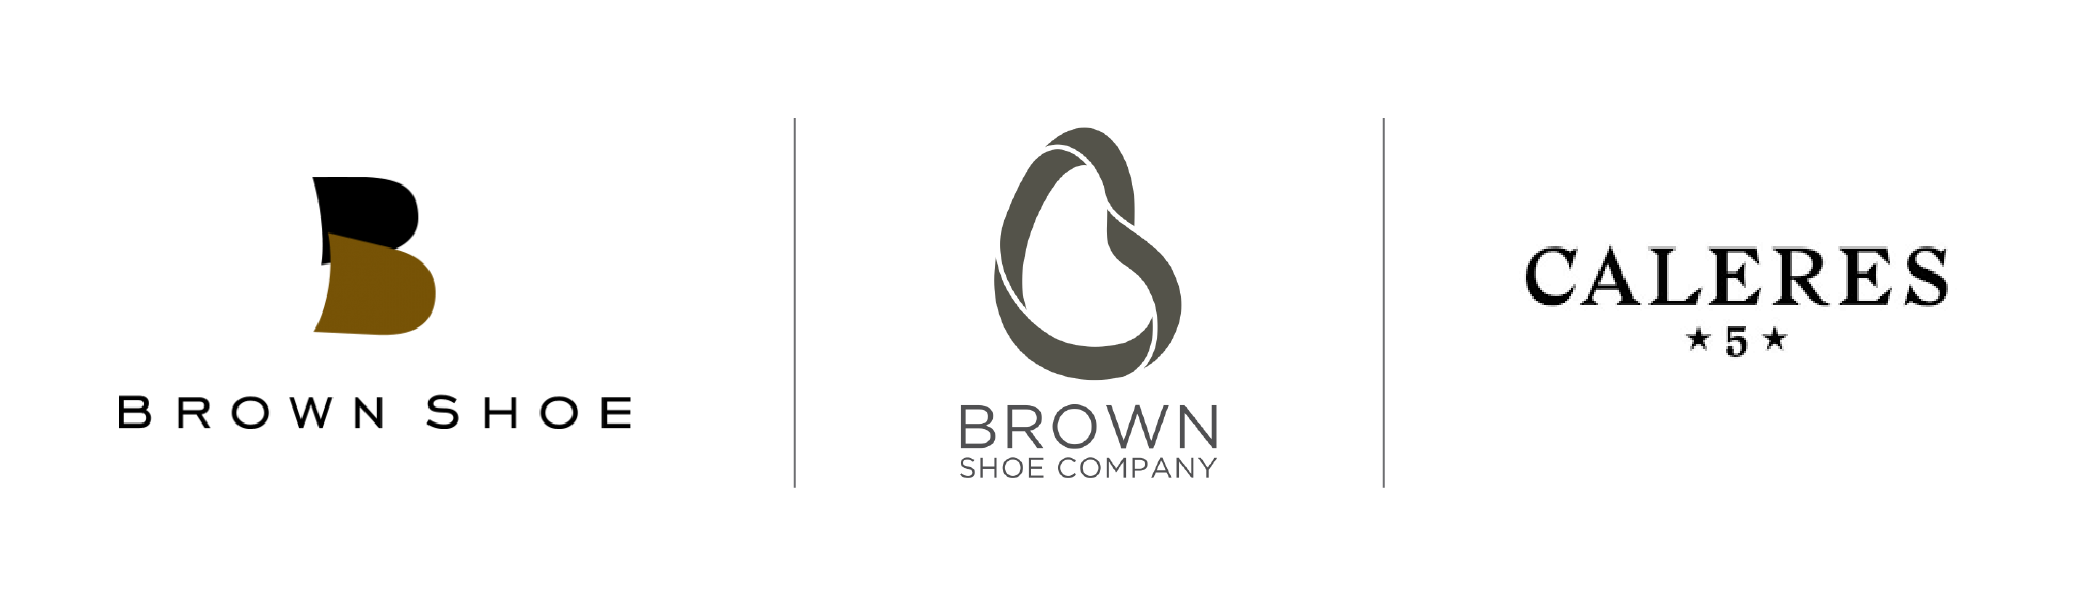 Brown Shoe Logos